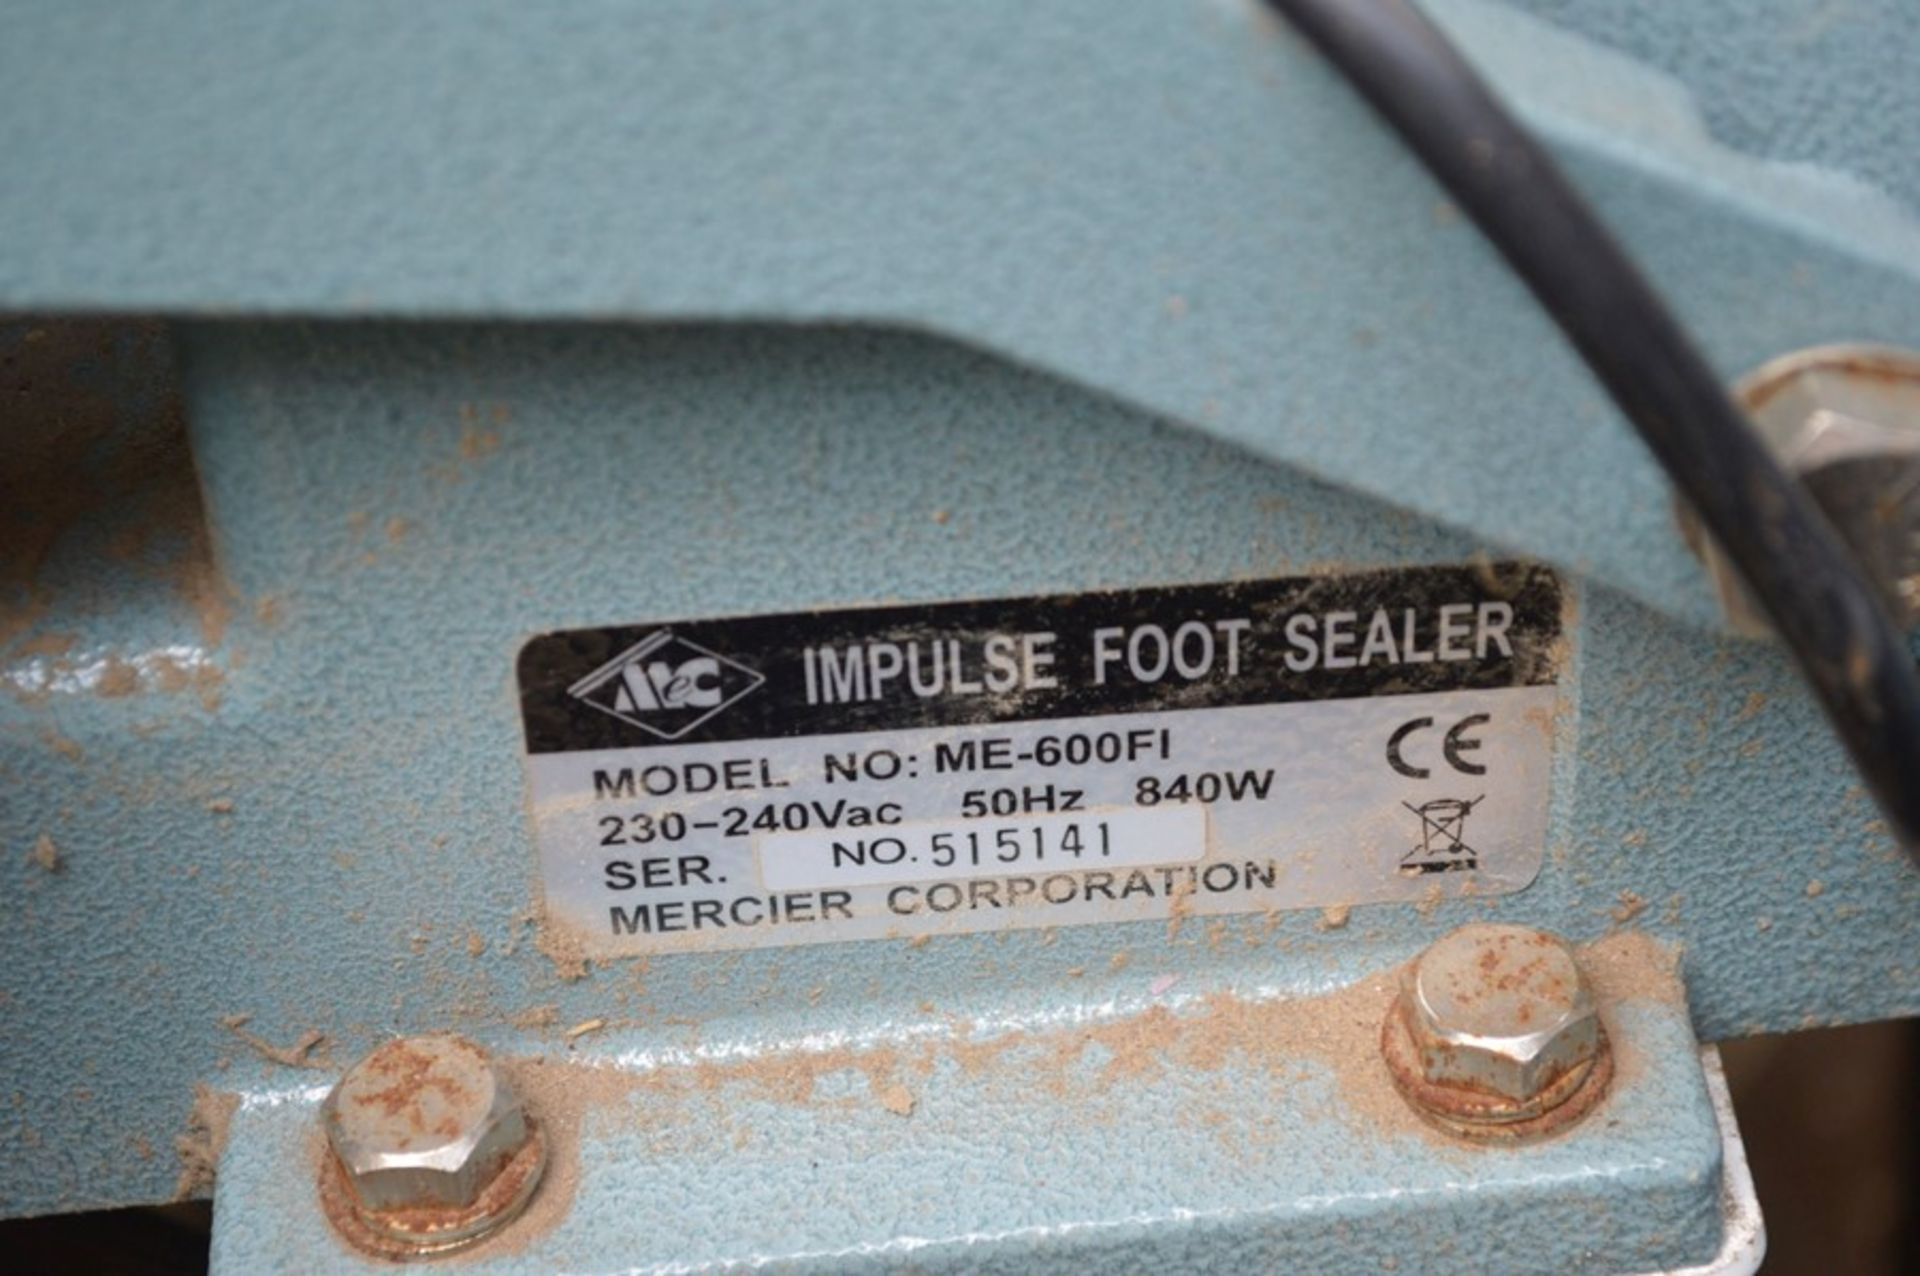 Mercier Impulse ME-600FI Heat Sealer, serial ni. 5 - Image 2 of 3